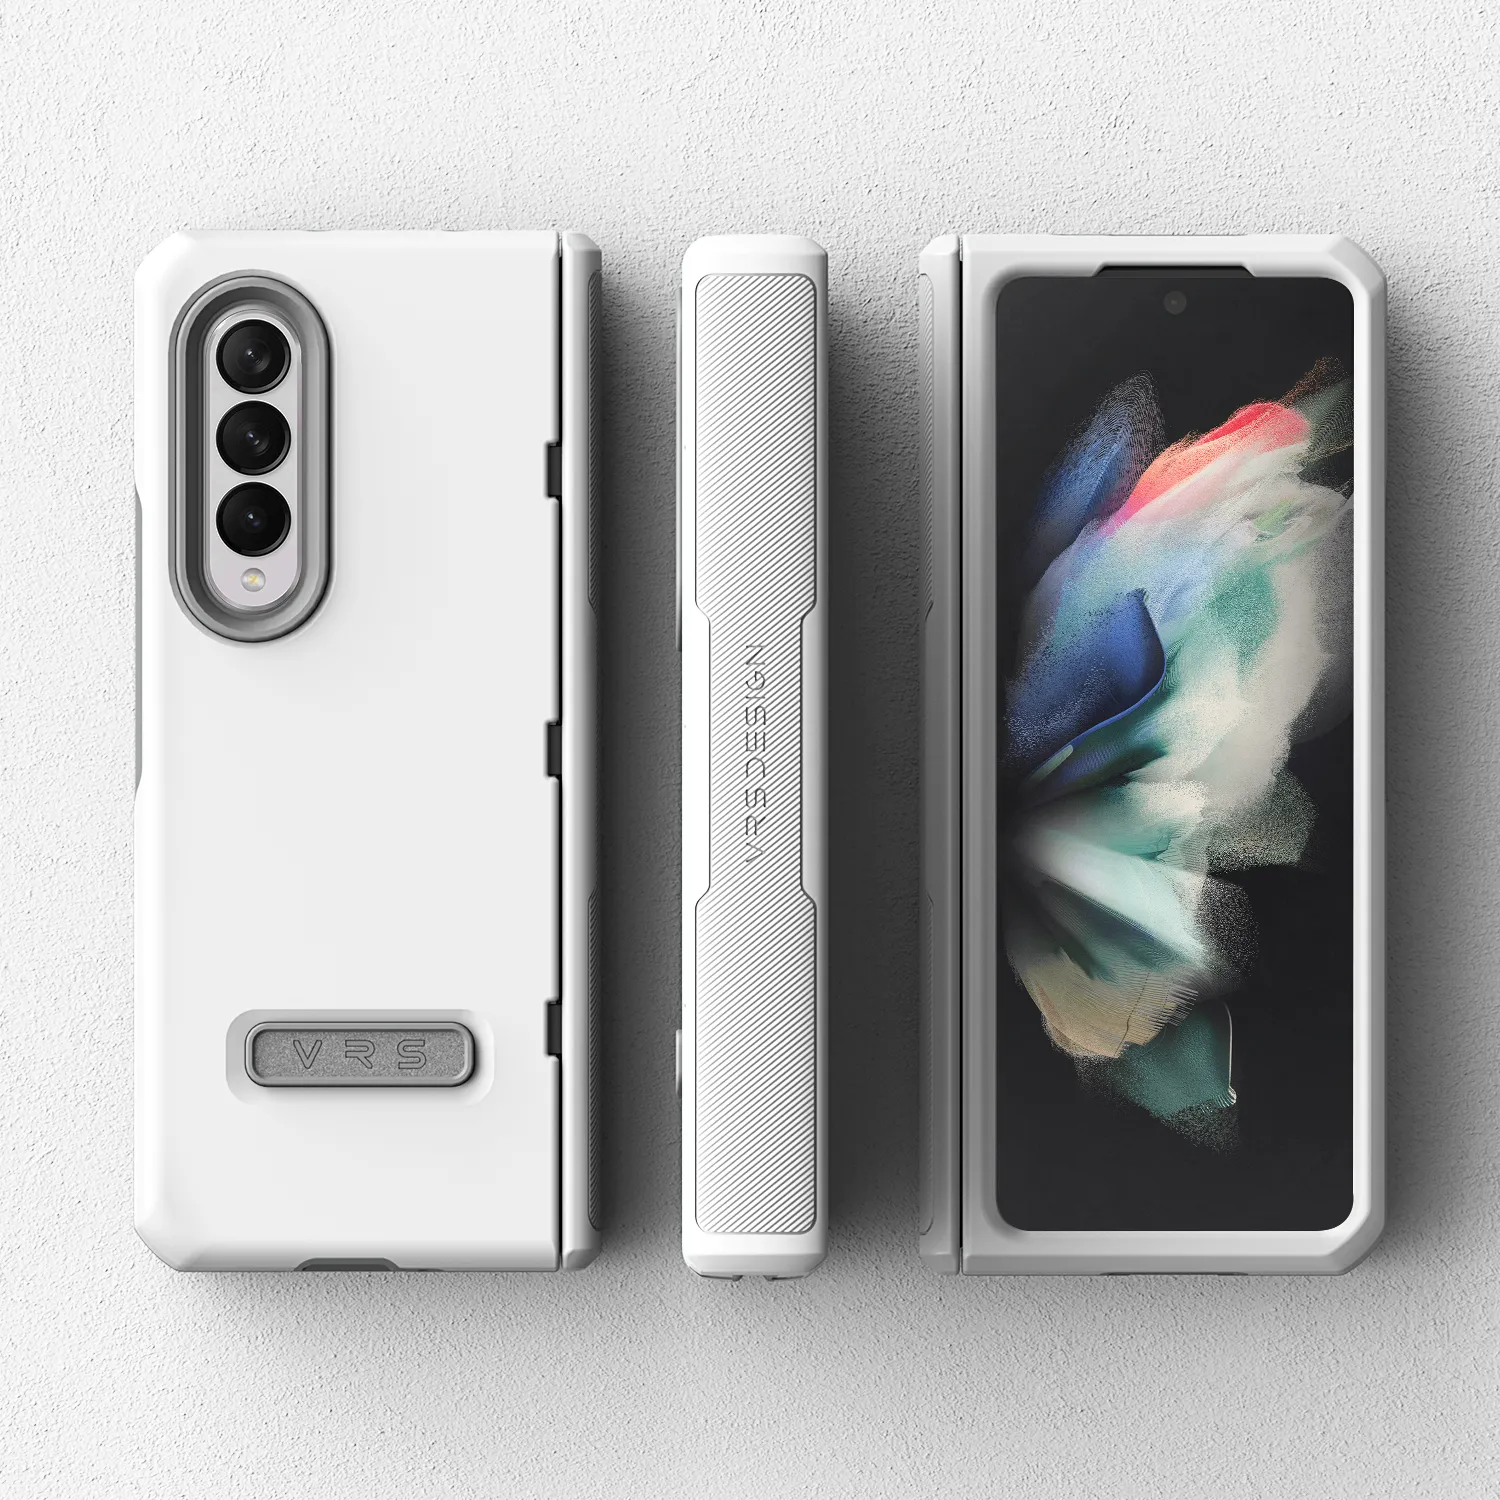 เคส VRS รุ่น Terra Guard Modern - Galaxy Z Fold 3 - สี White